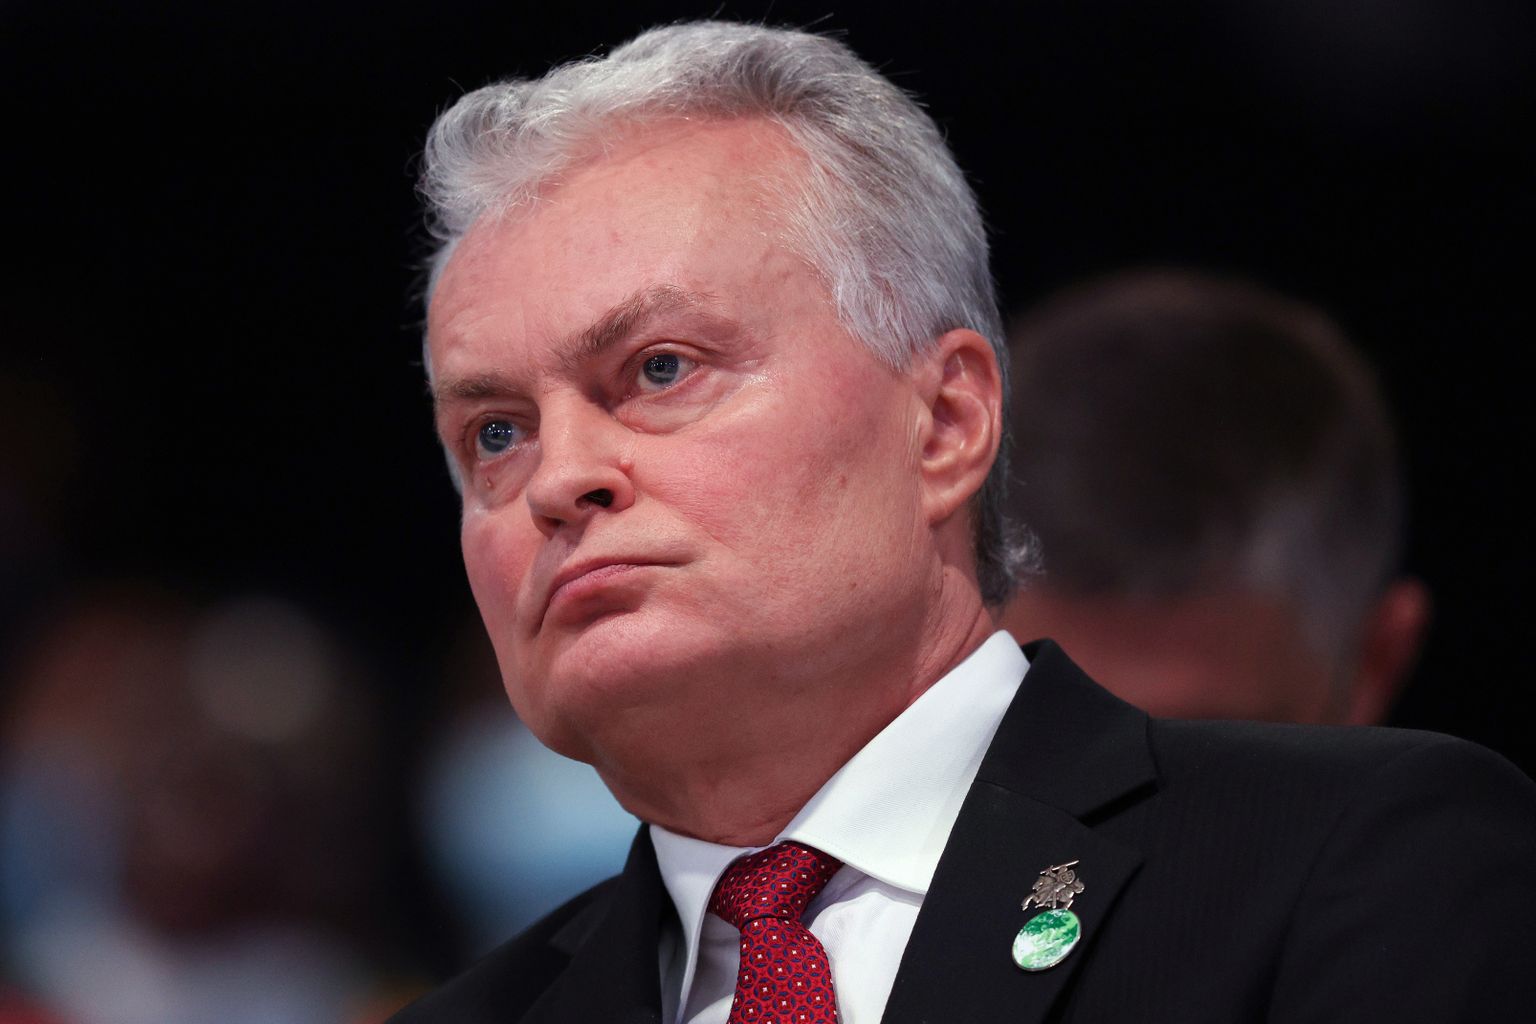 Leedu president Gitanas Nauseda Glasgow's ÜRO kliimakonverentsil.